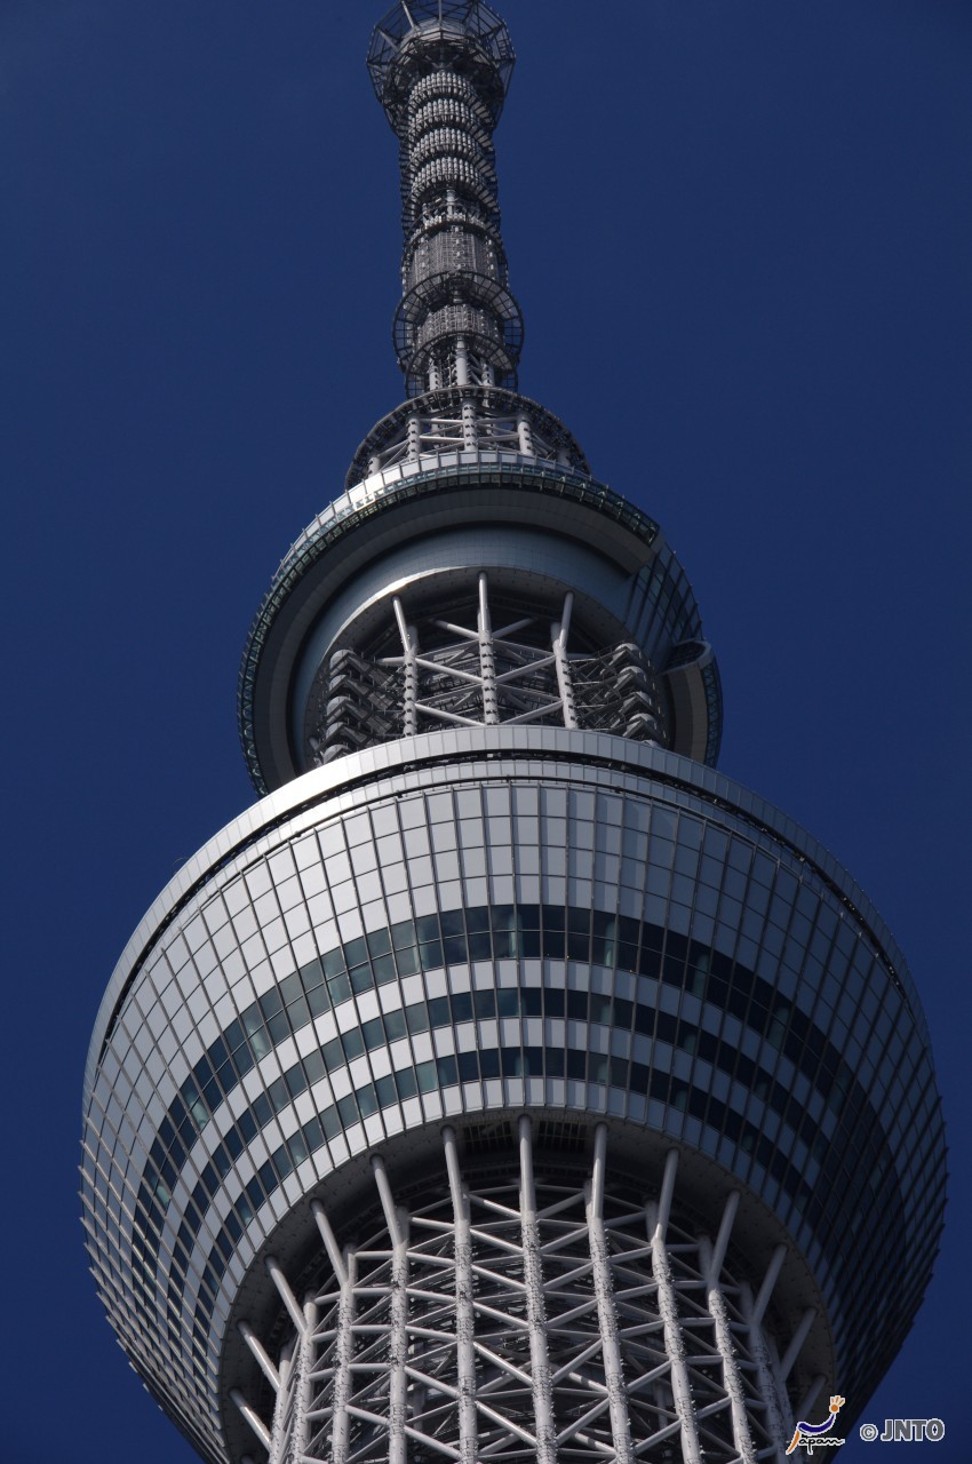 Tokyo SkyTree observation desk. Photo: JNTO